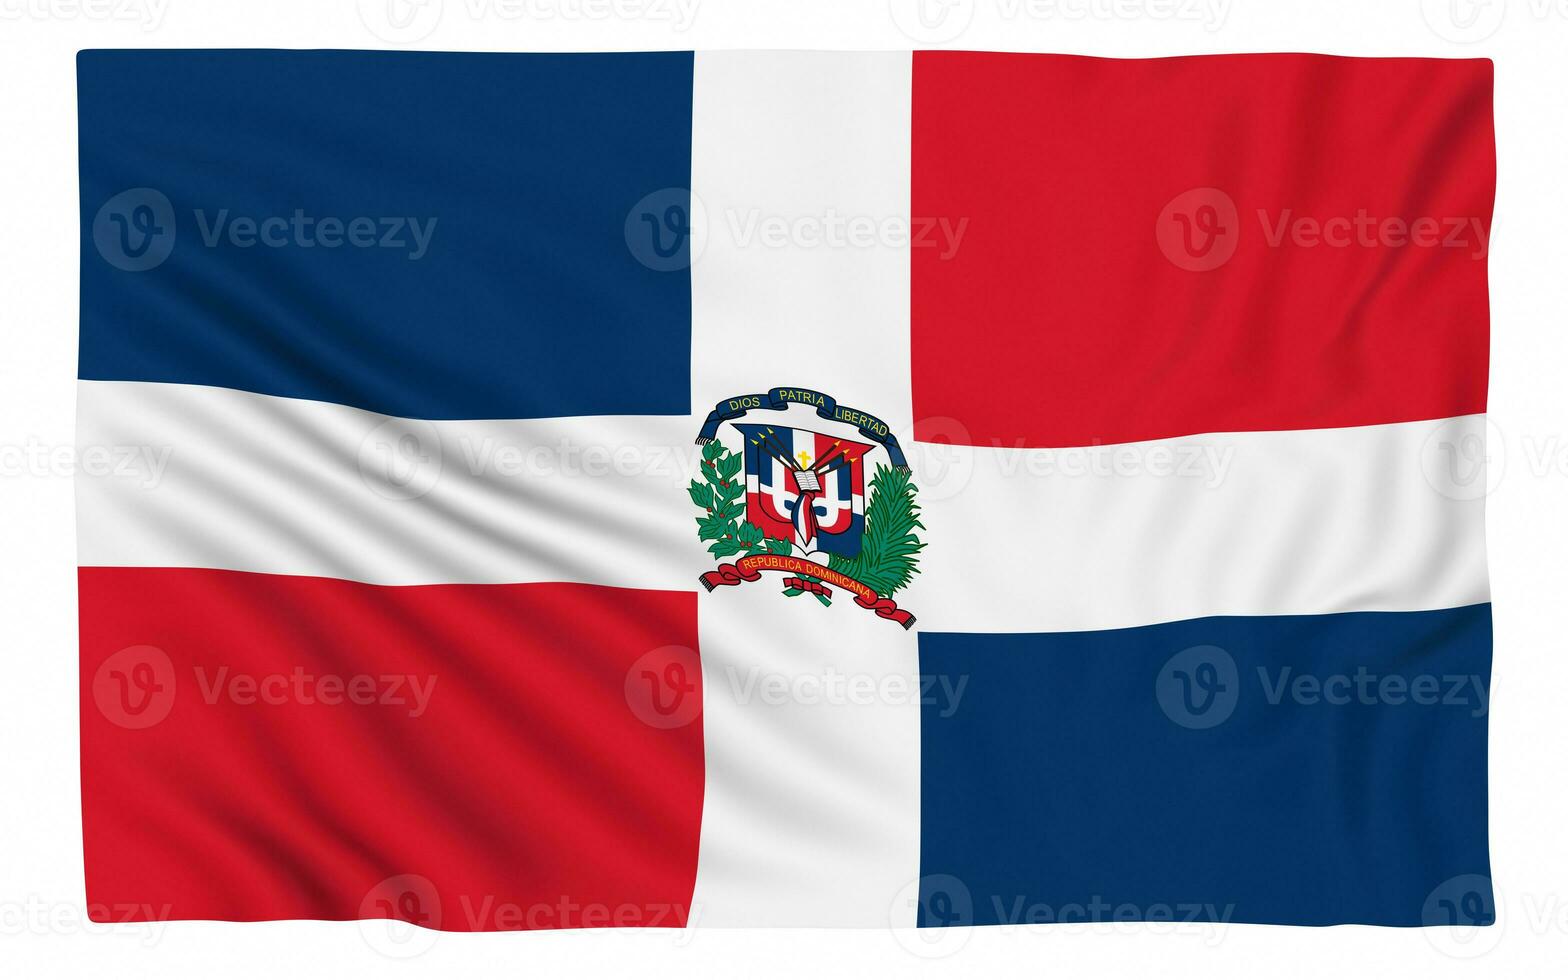 bandiera della repubblica dominicana foto